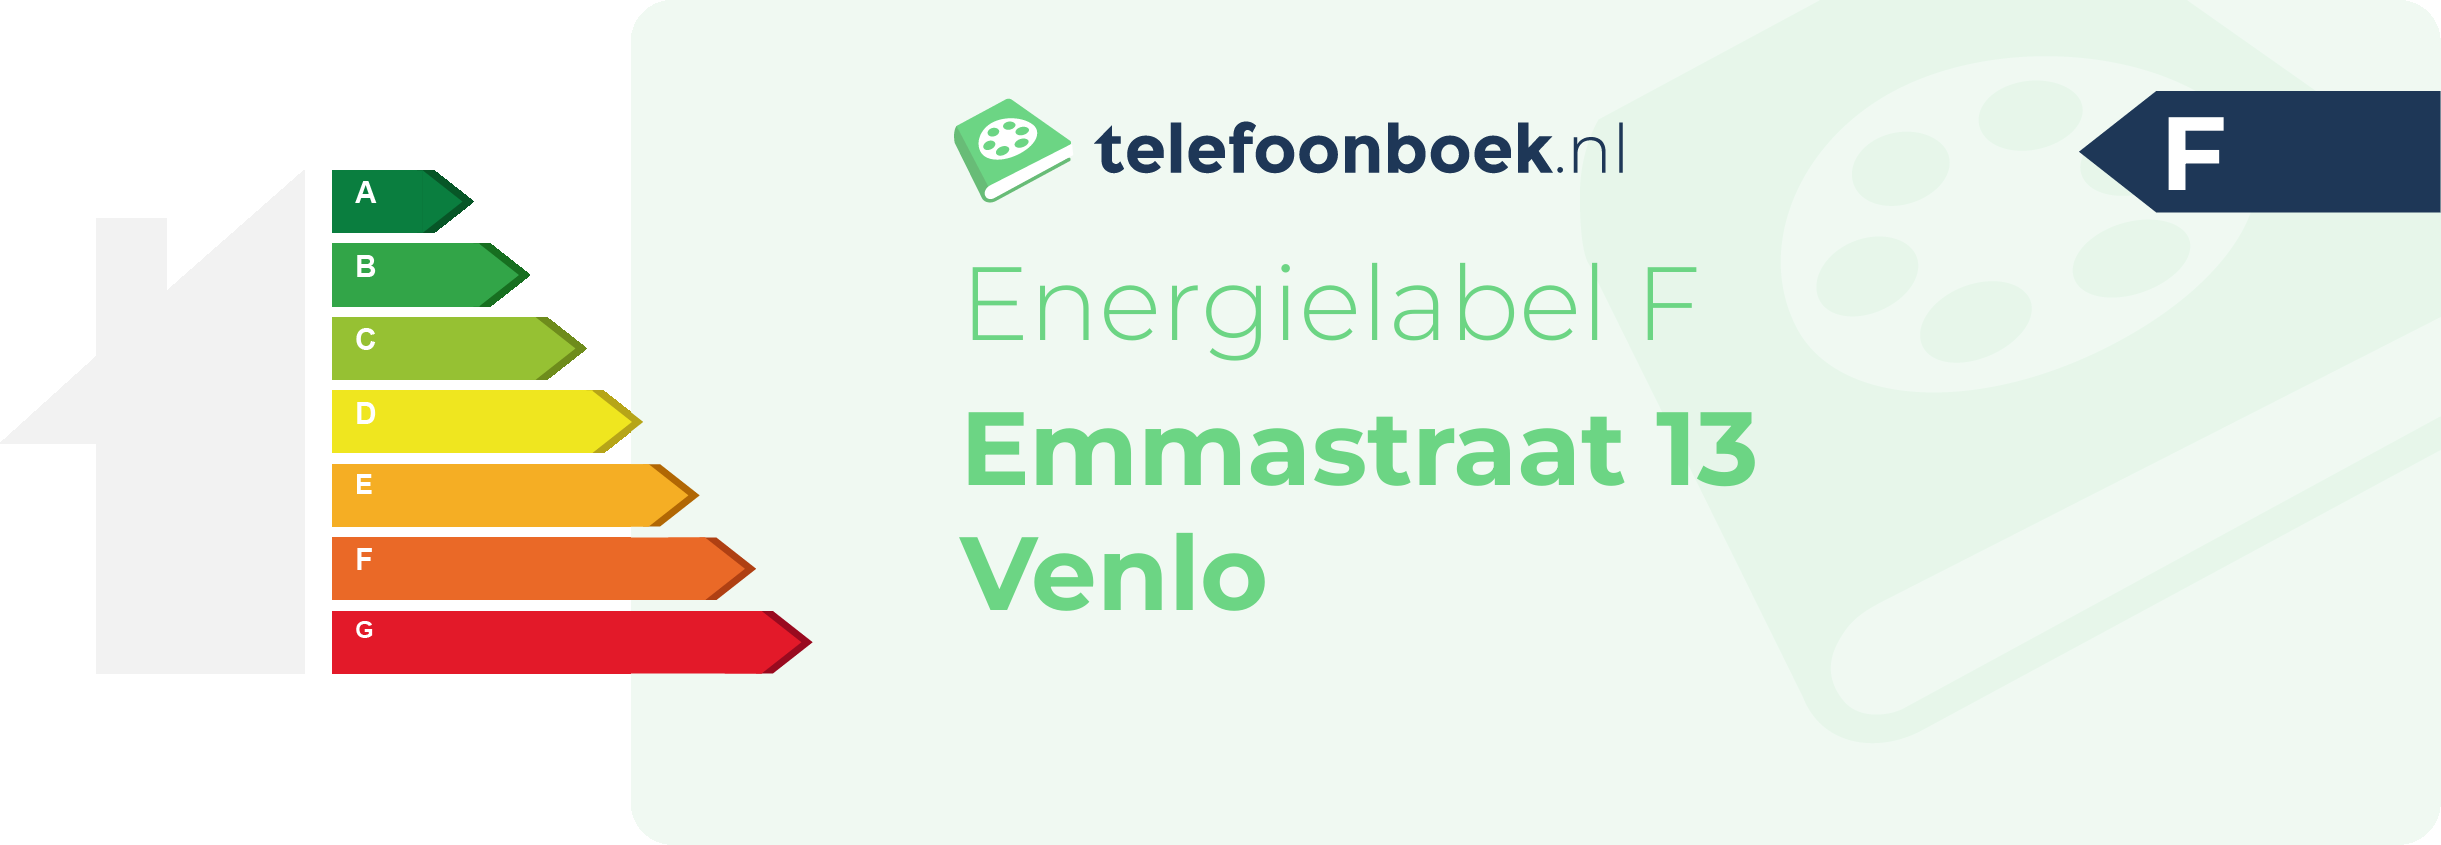 Energielabel Emmastraat 13 Venlo